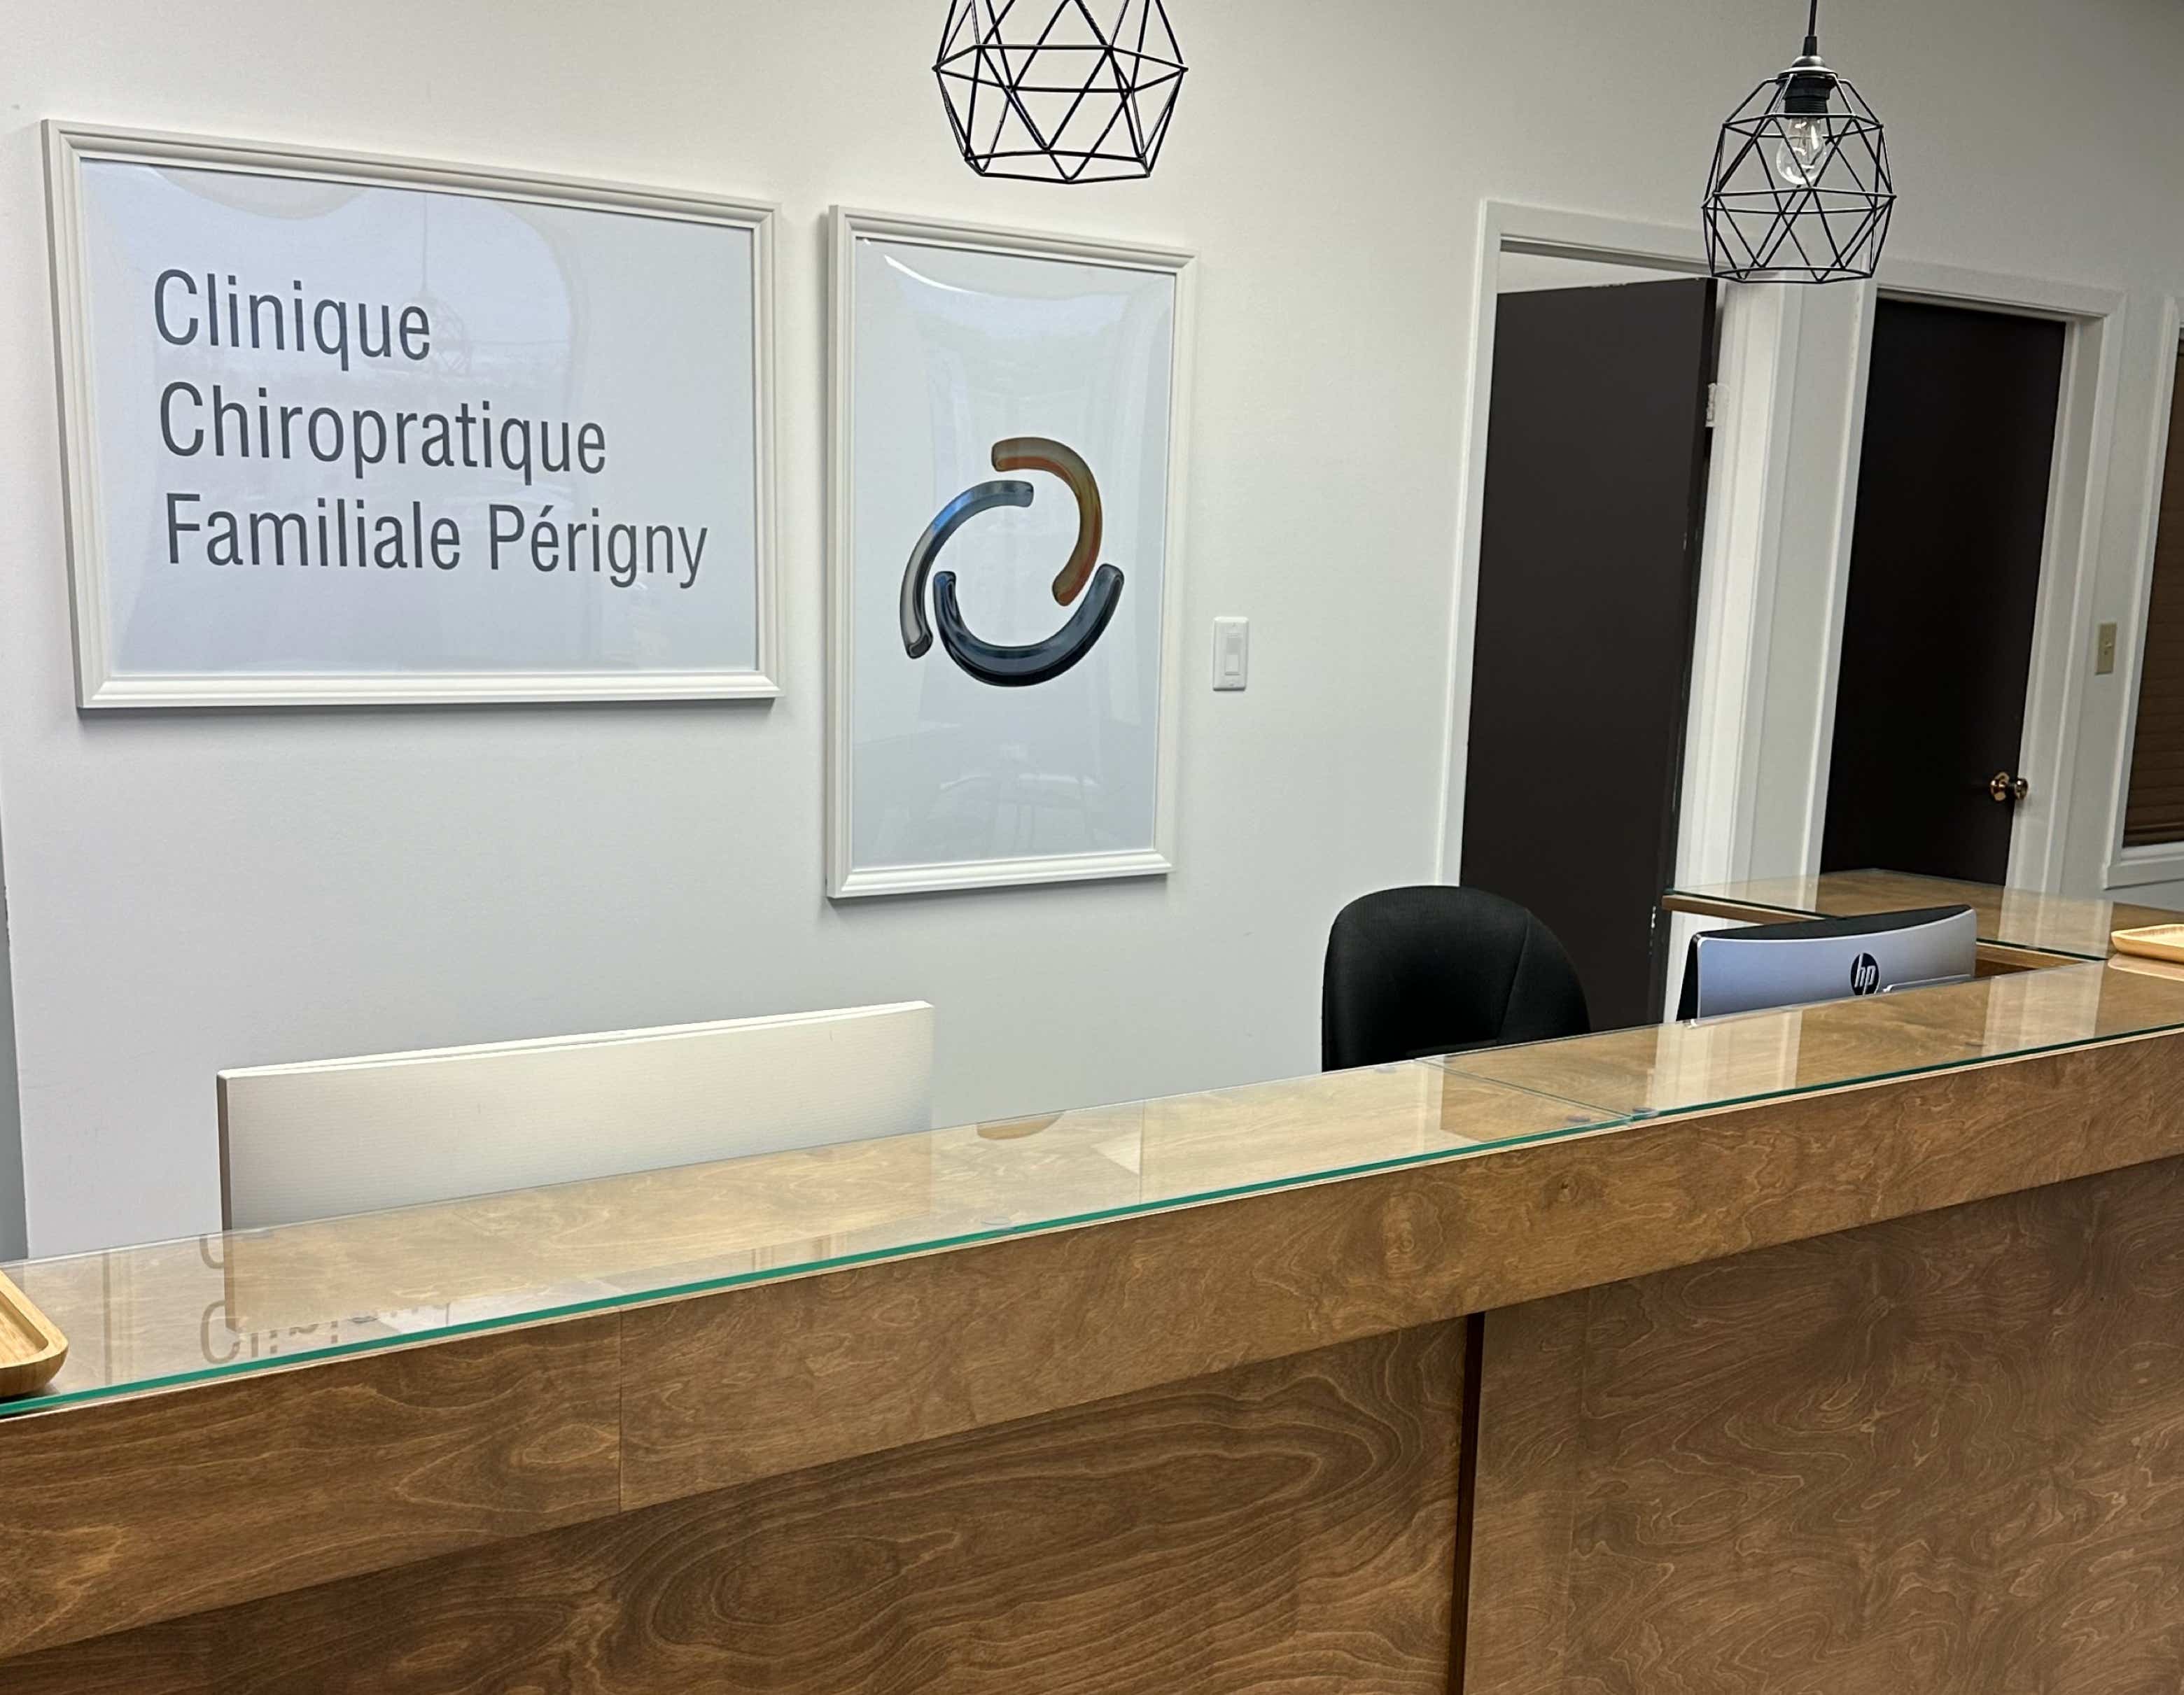 La réception clinique chiropratique familiale Périgny